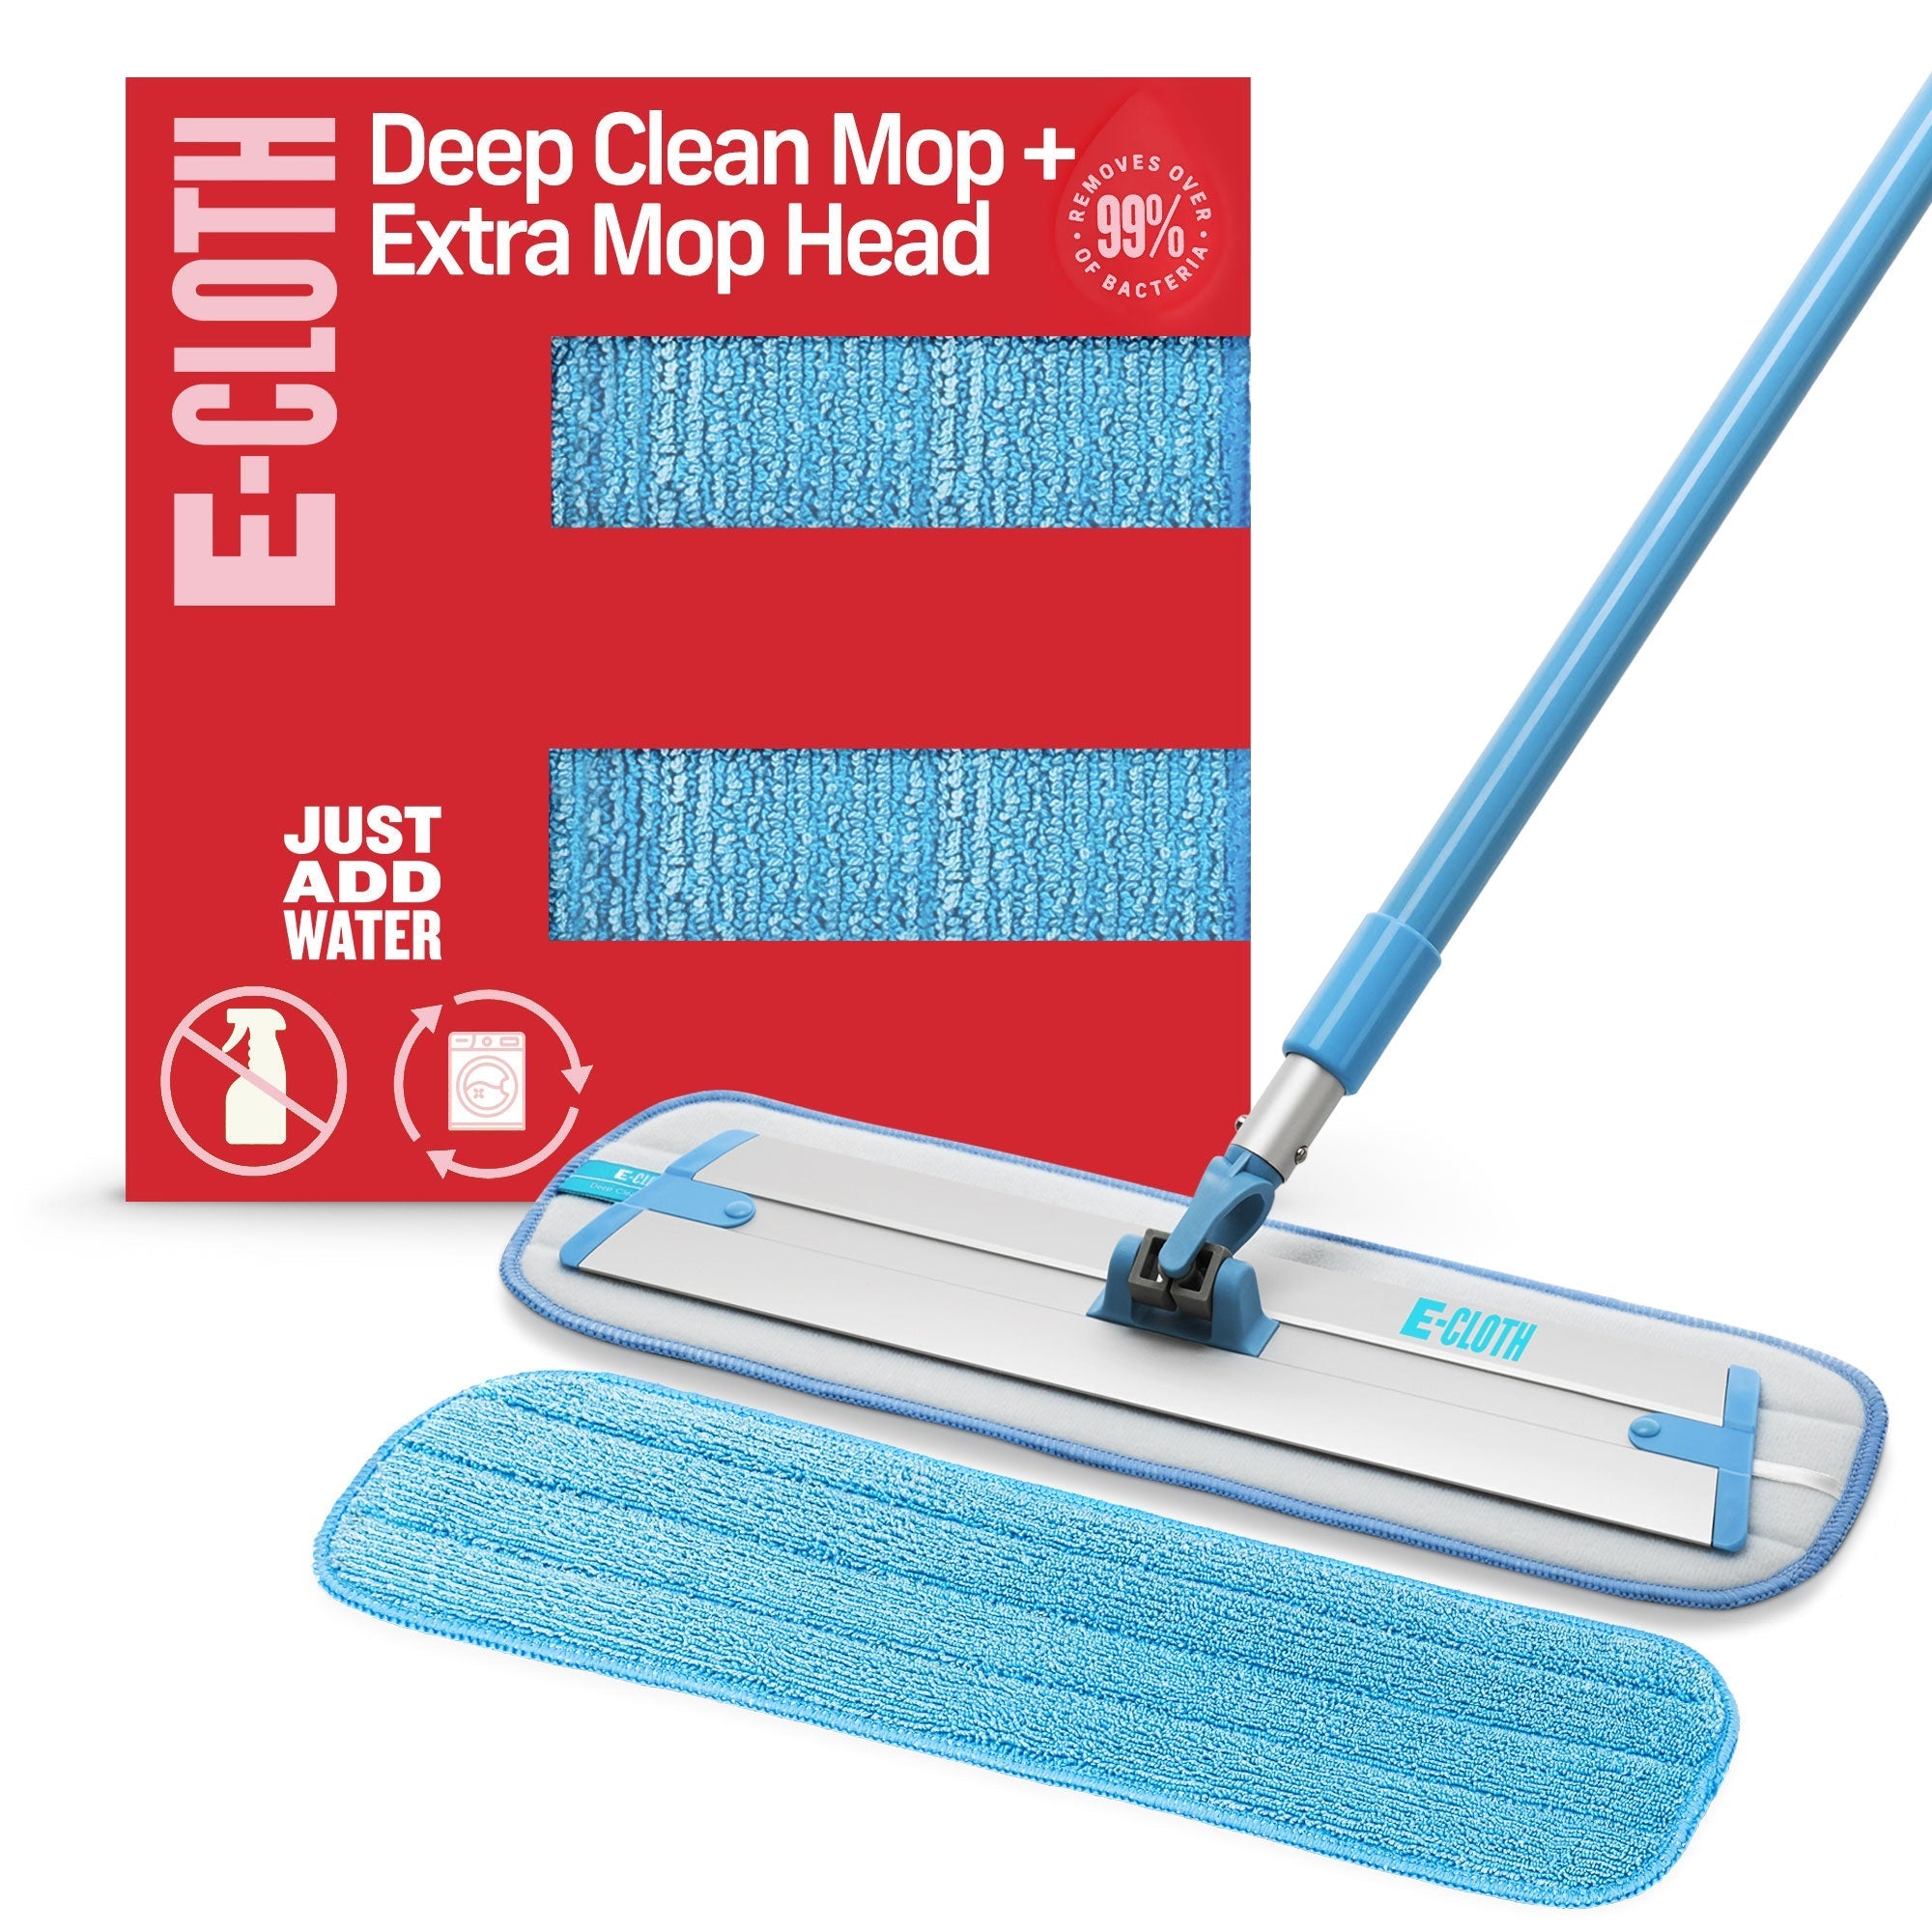 Deep Clean Mop